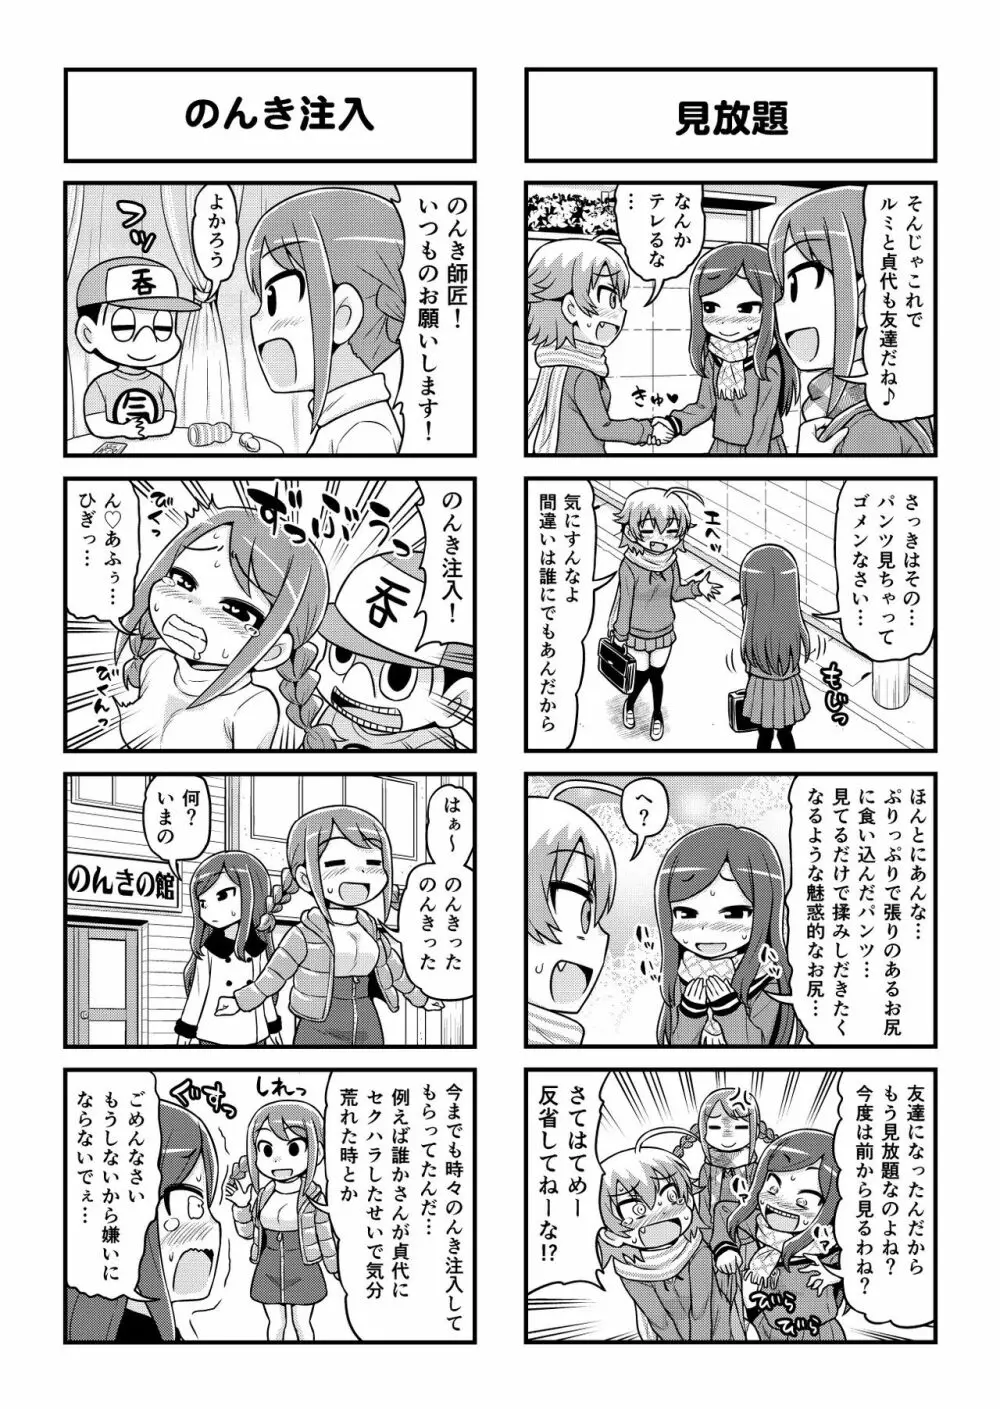 のんきBOY 1-52 - page406